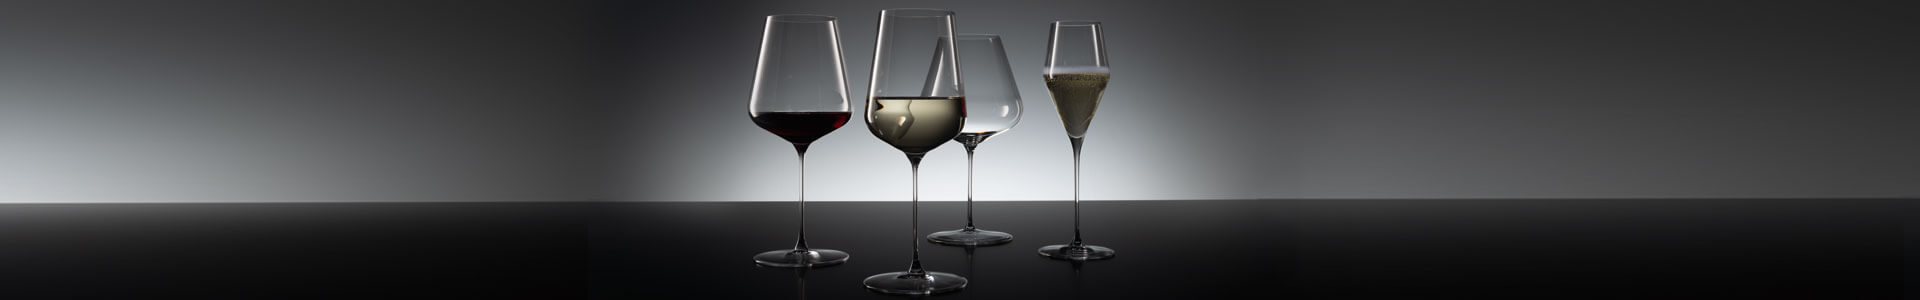 Weingläser von Spiegelau stehen auf einer dunklen Fläche.